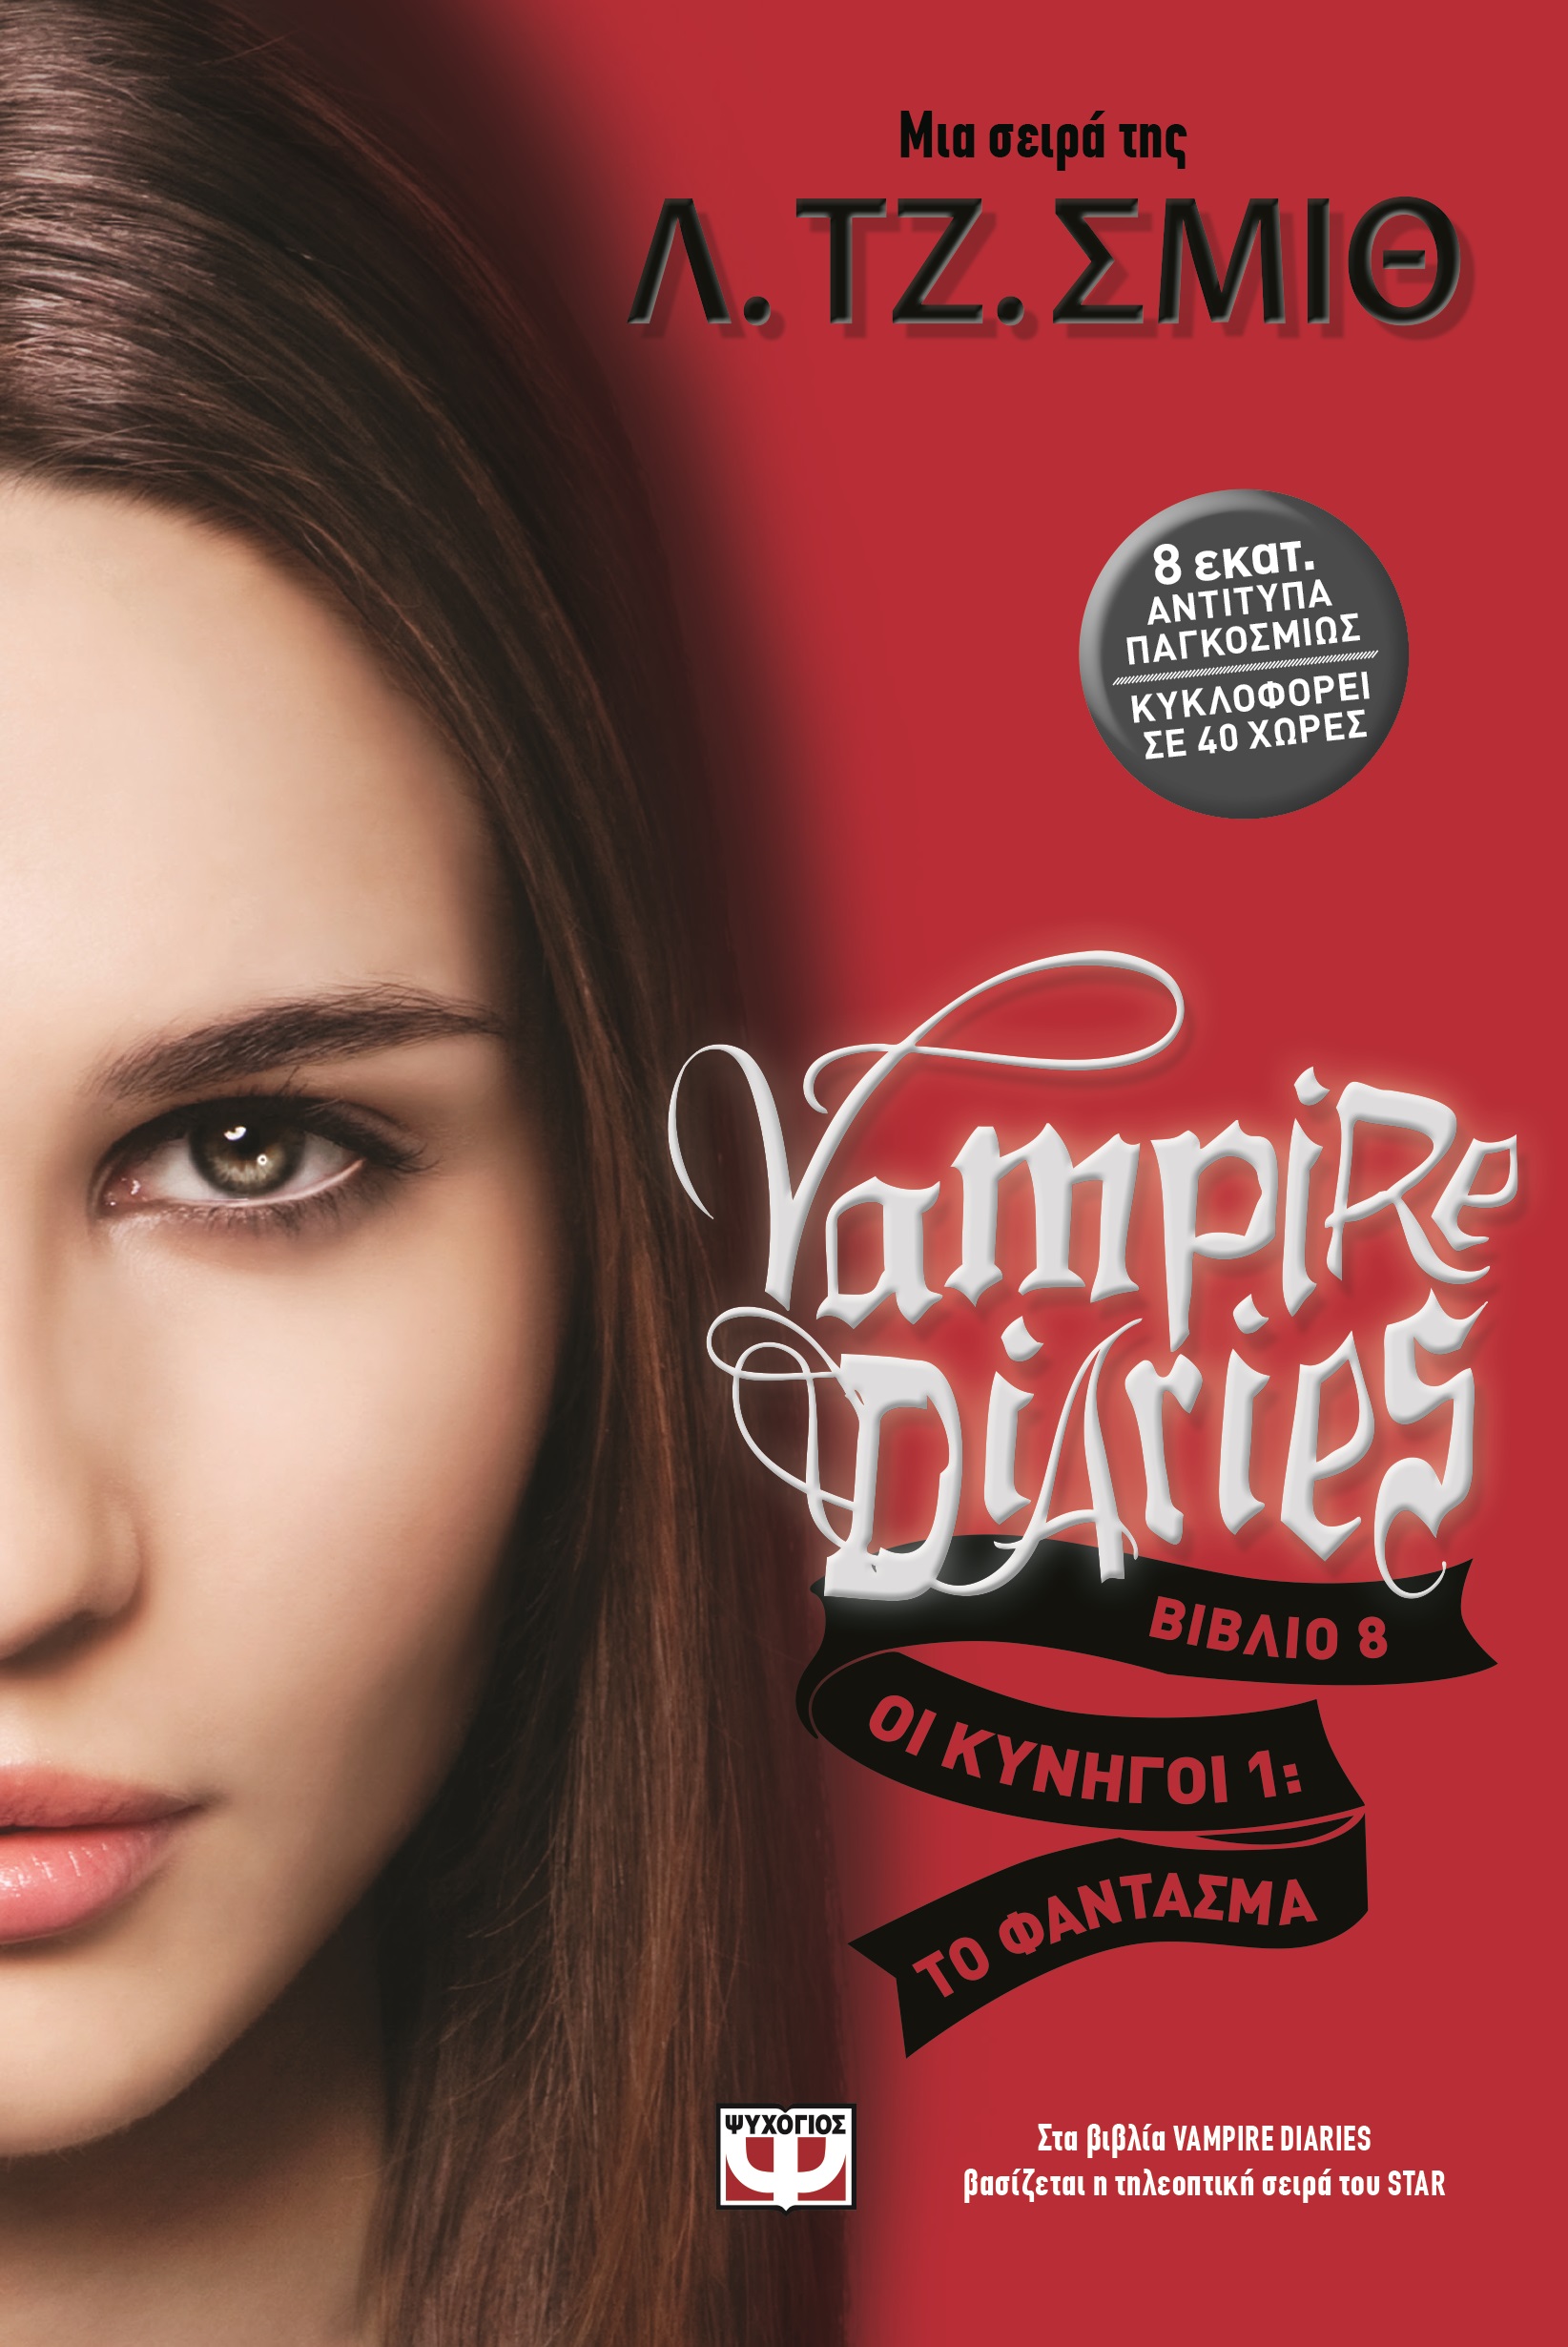 the vampire diaries volume 1